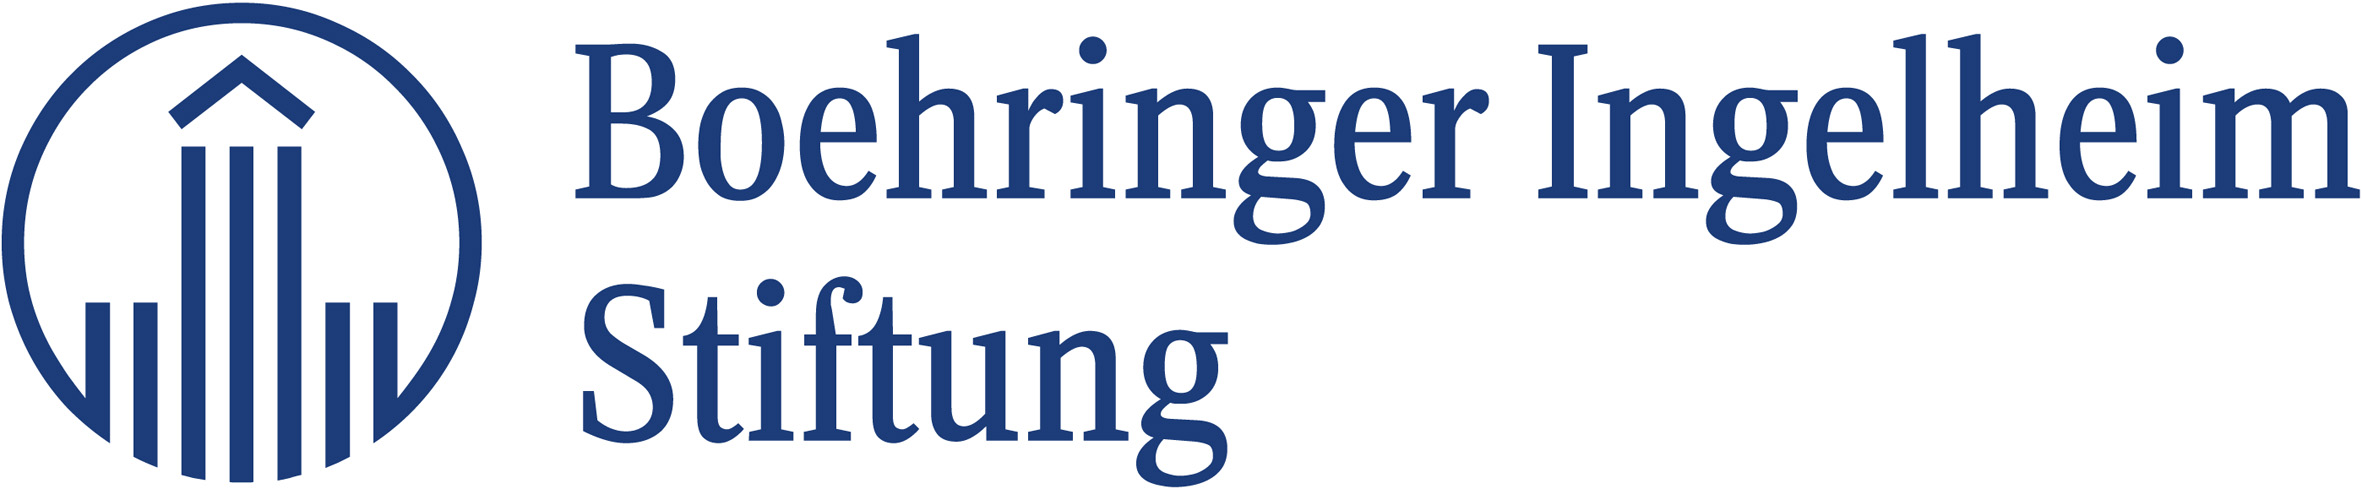 Bhringer Ingelheim Stiftung